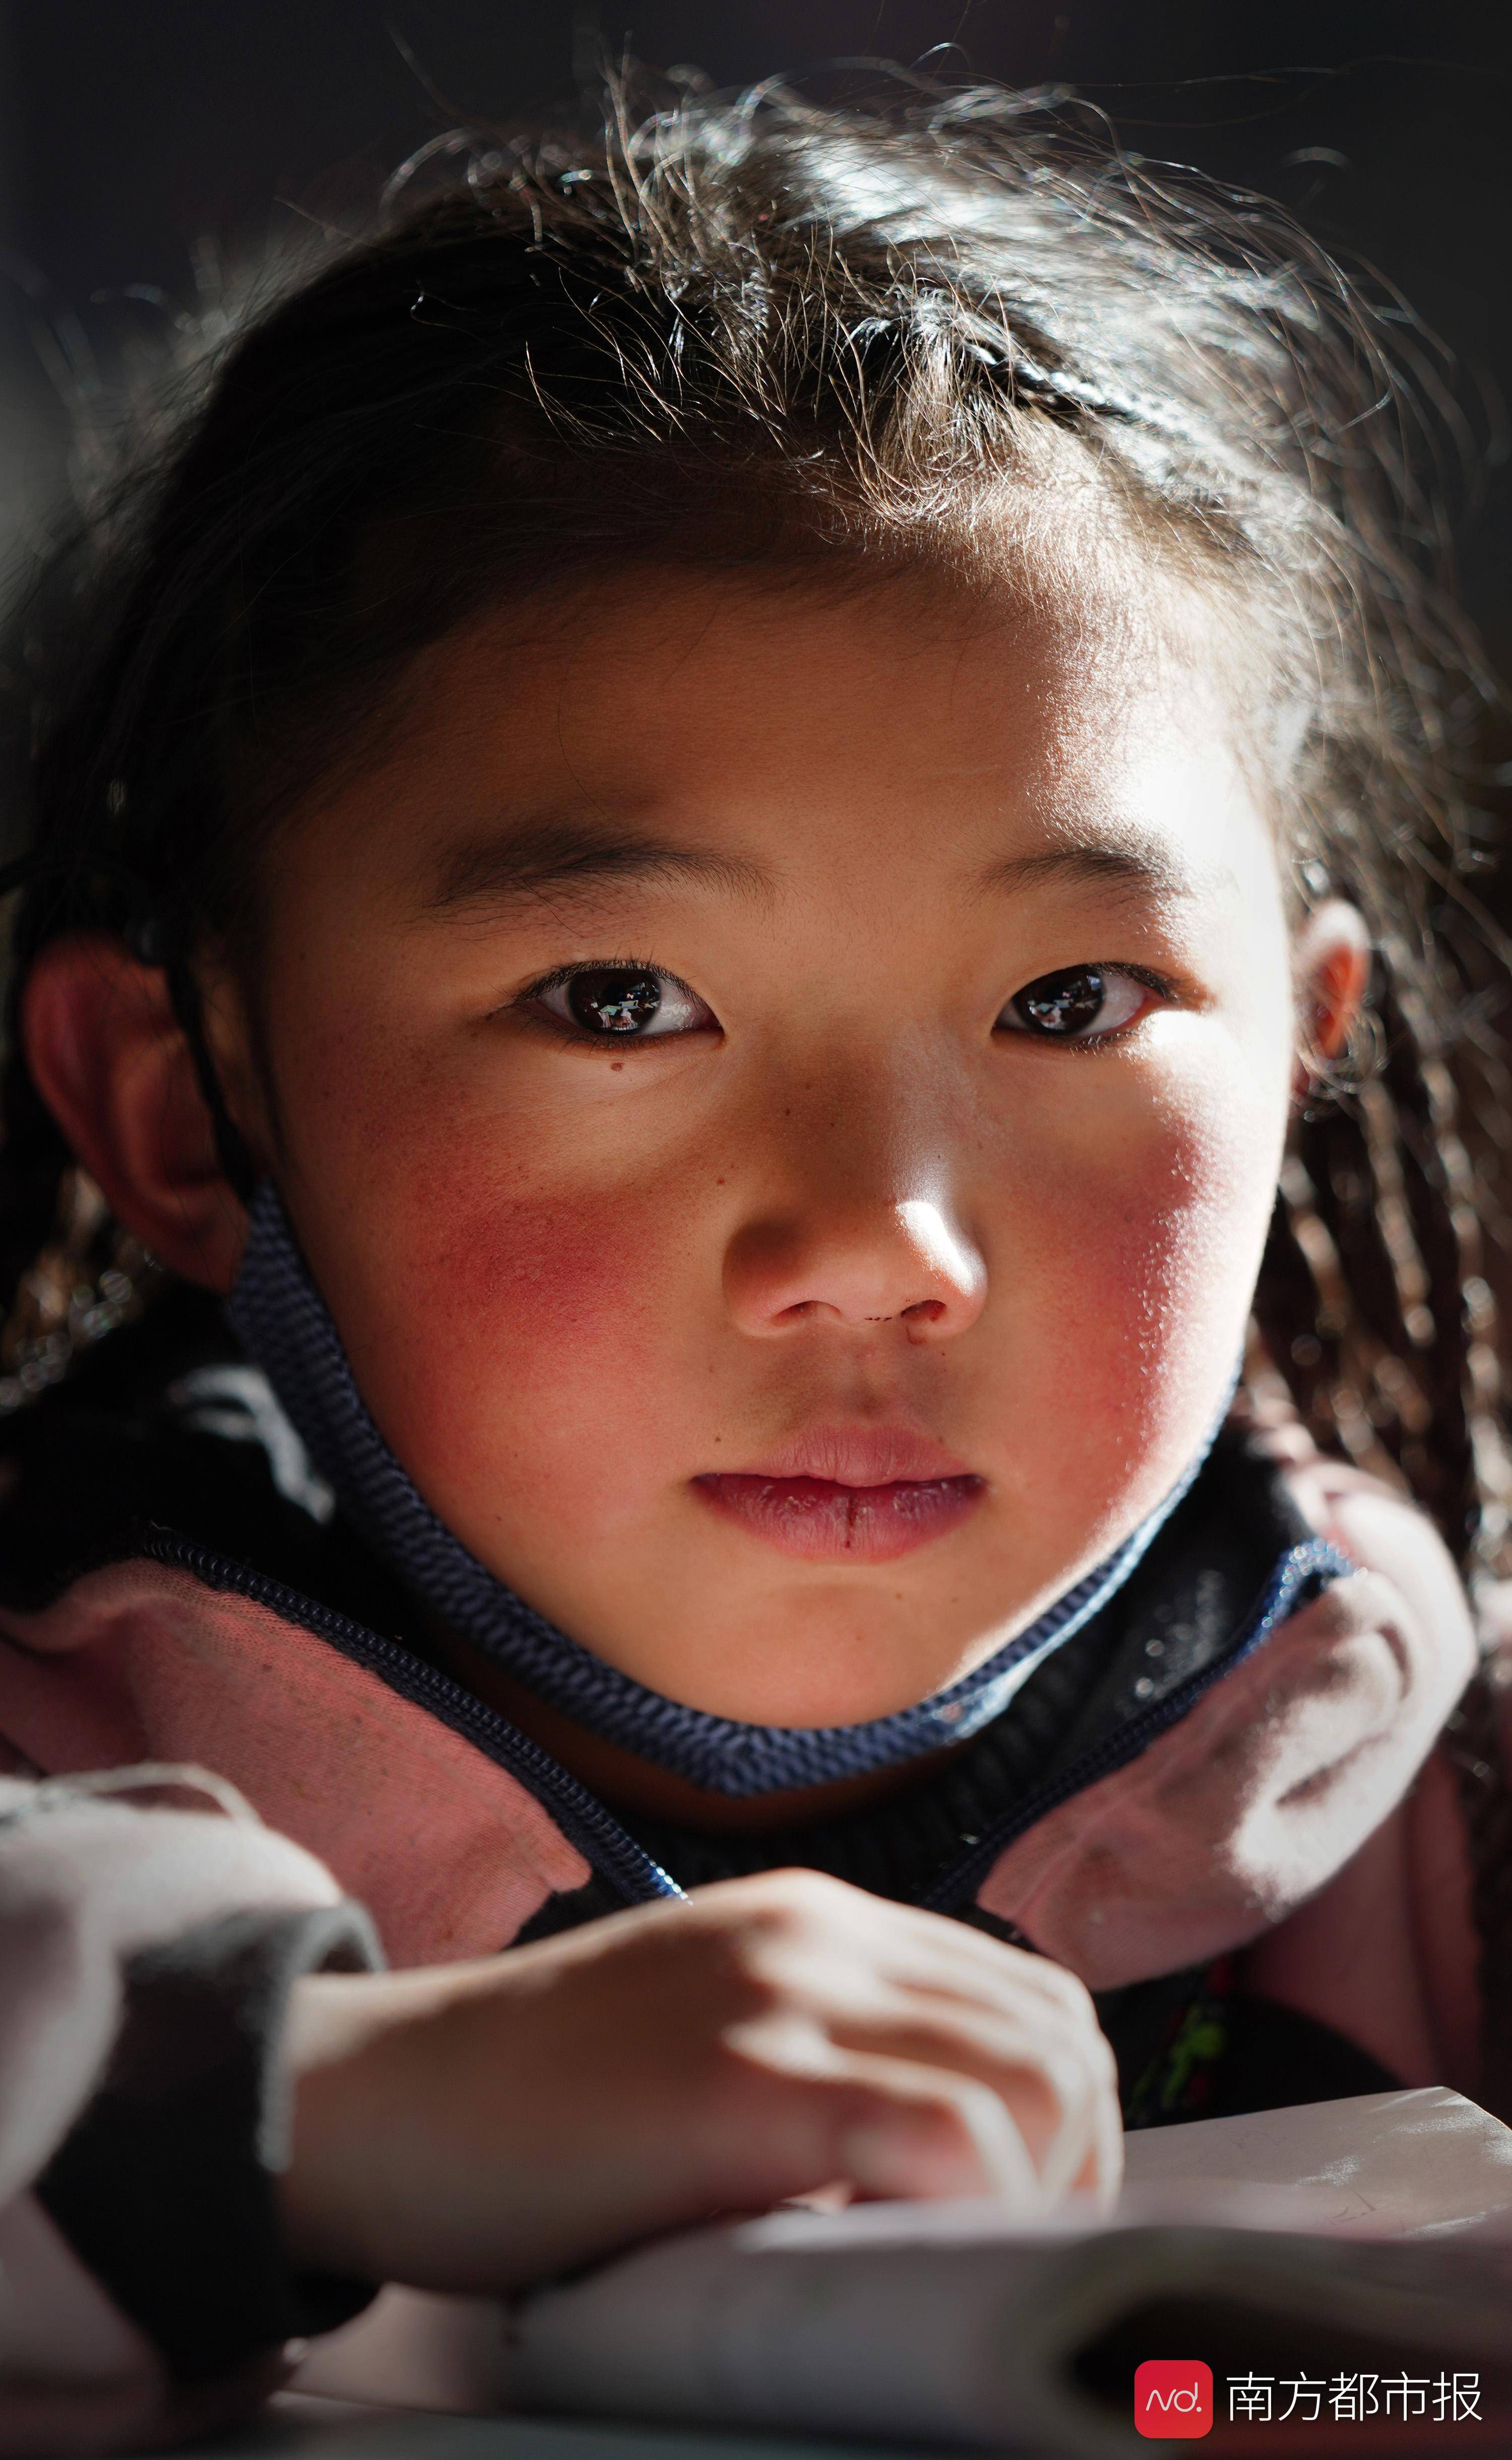 童年 丁真:不让每双纯净眼睛因贫失学,藏区教育14年